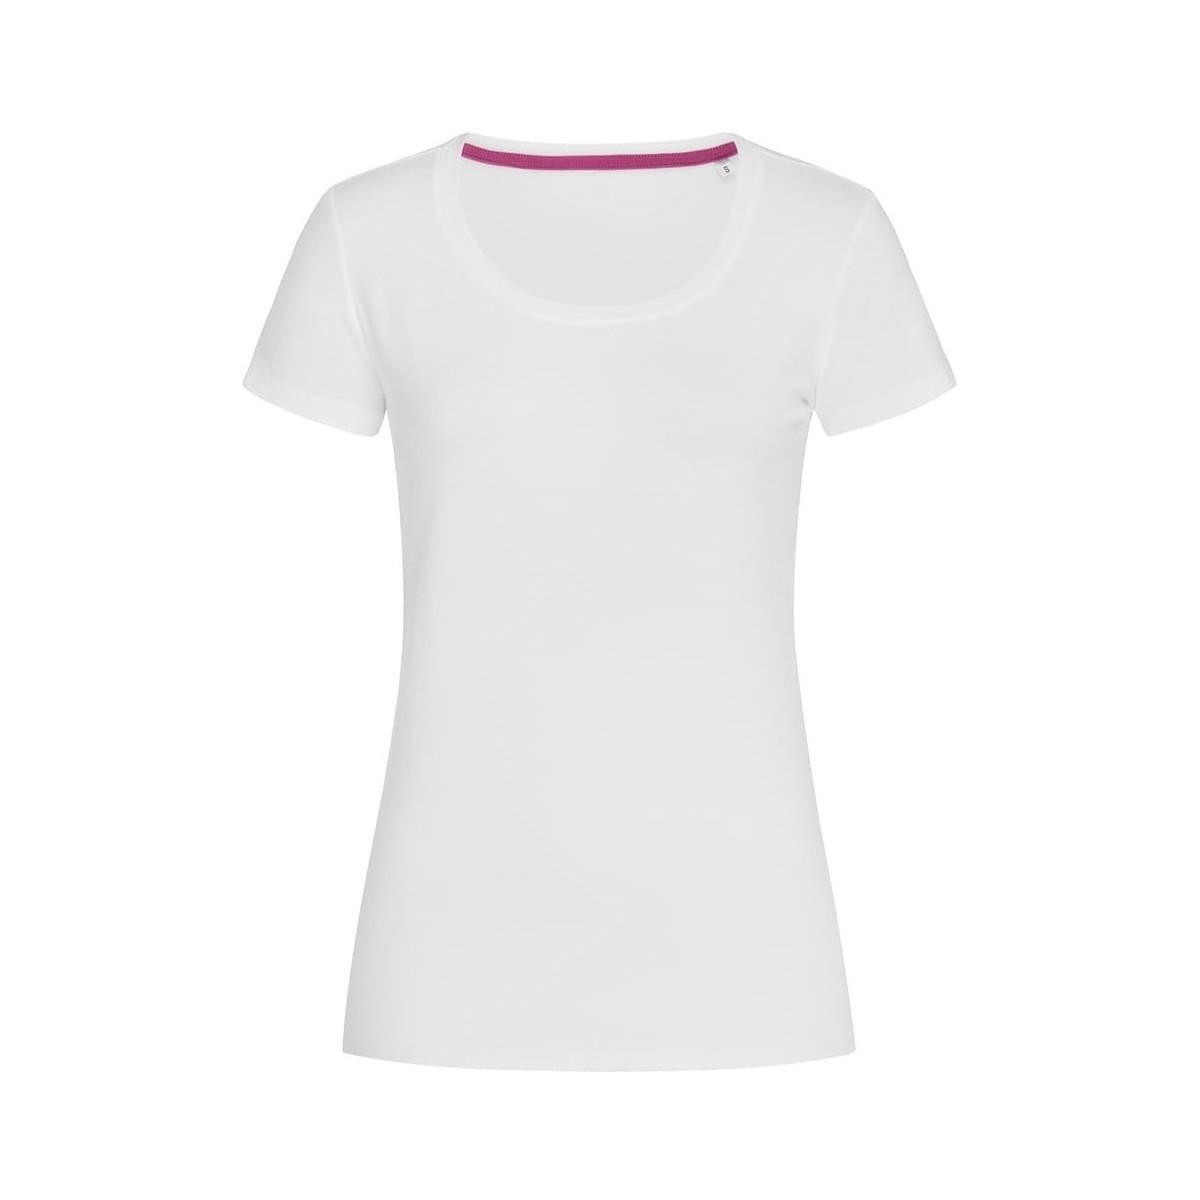 Vêtements Femme T-shirts manches longues Stedman Stars Claire Blanc